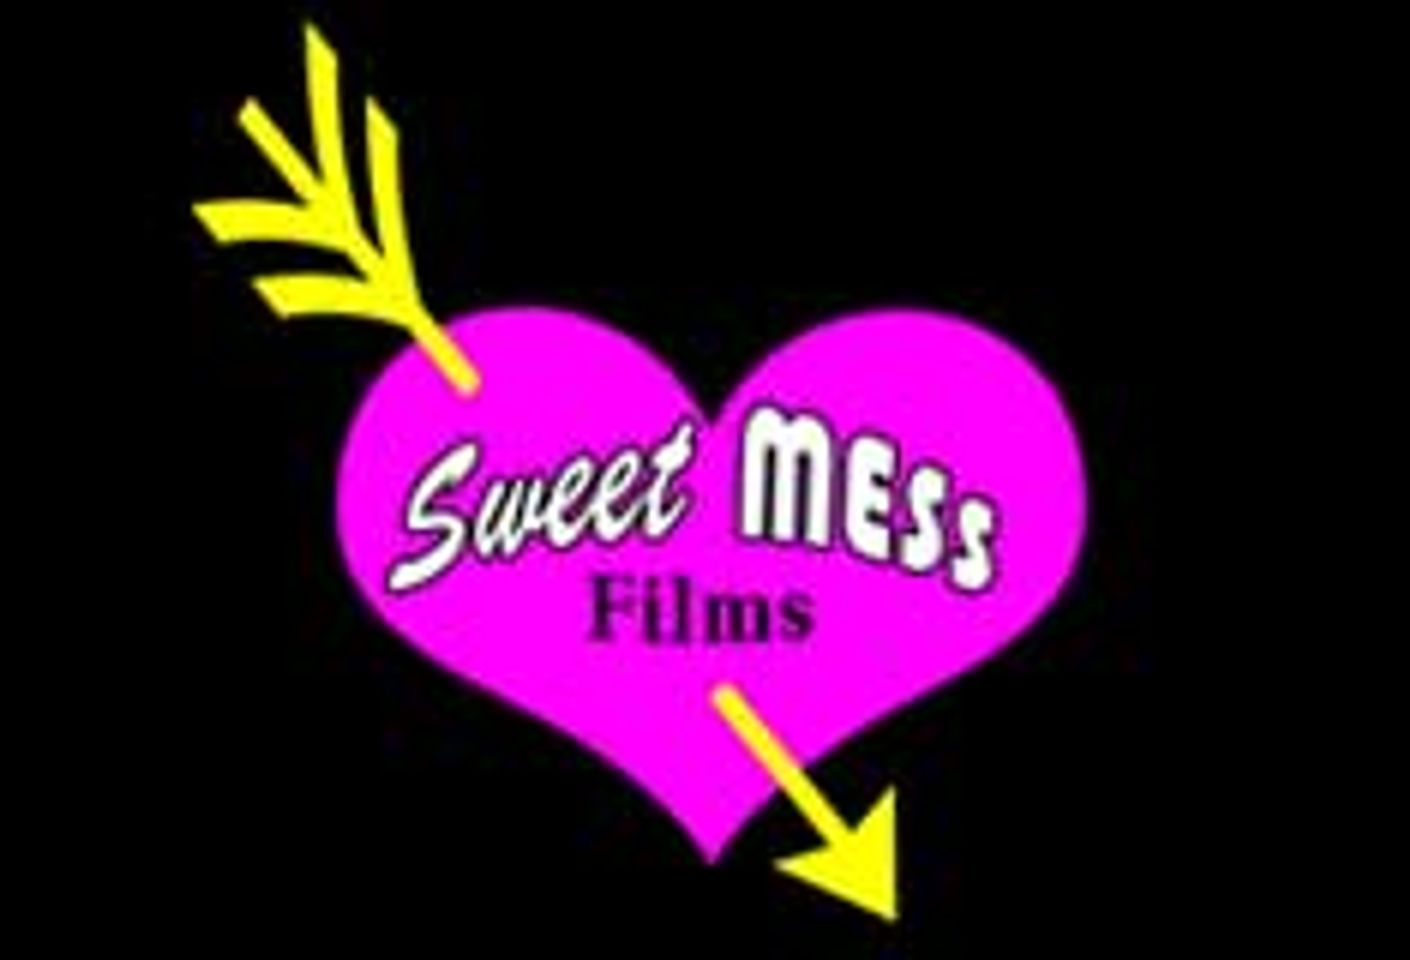 ‘Breaking Bad XXX: A Sweet Mess Films Parody’ SFW Trailer Debuts